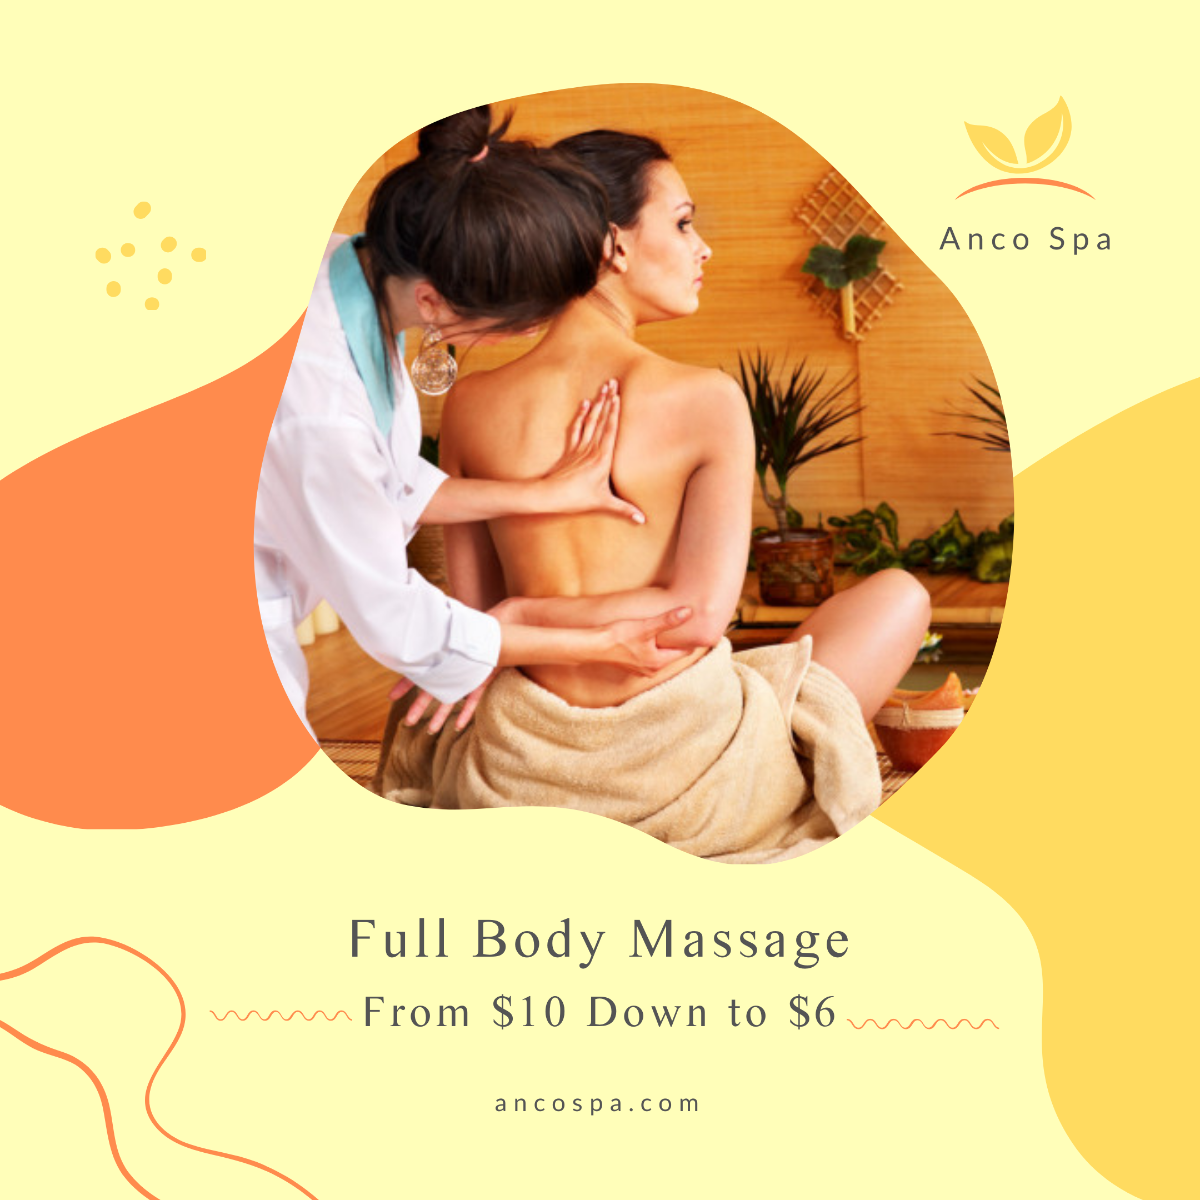 Full Body Massage Offer Post, Instagram, Facebook